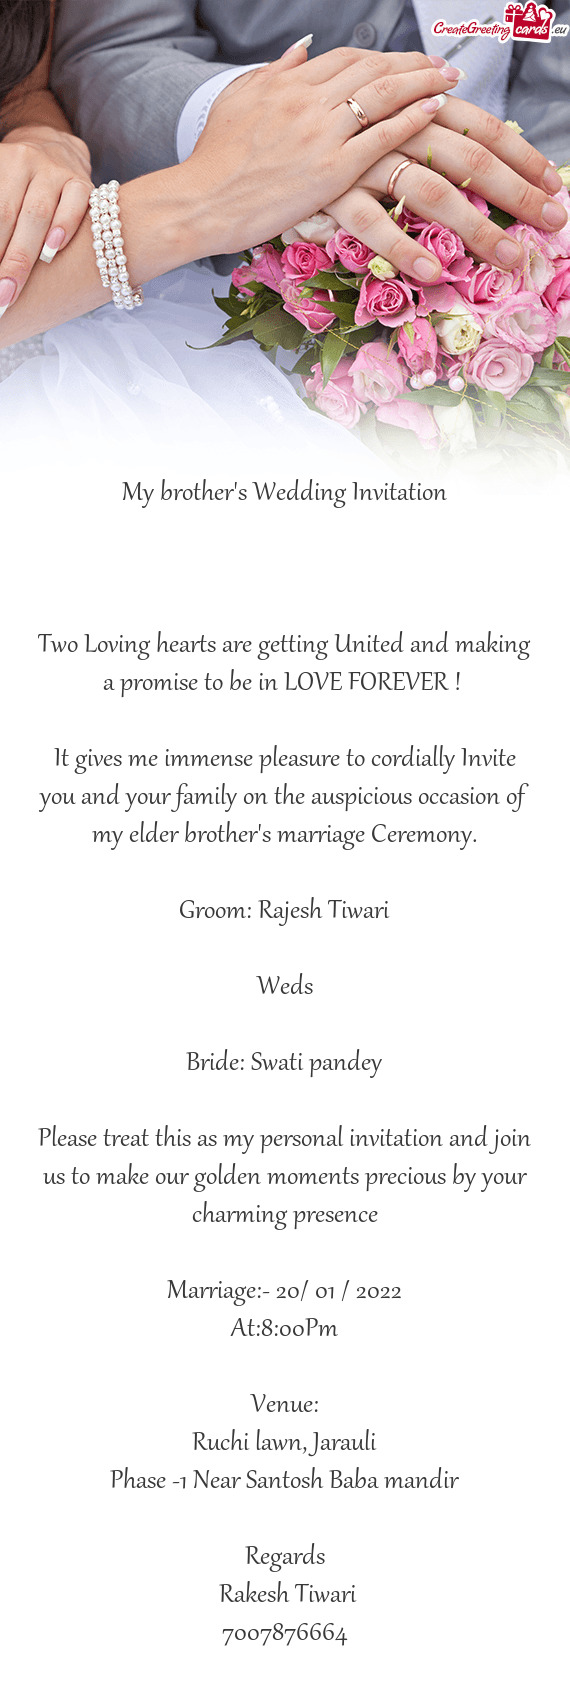 Bride: Swati pandey